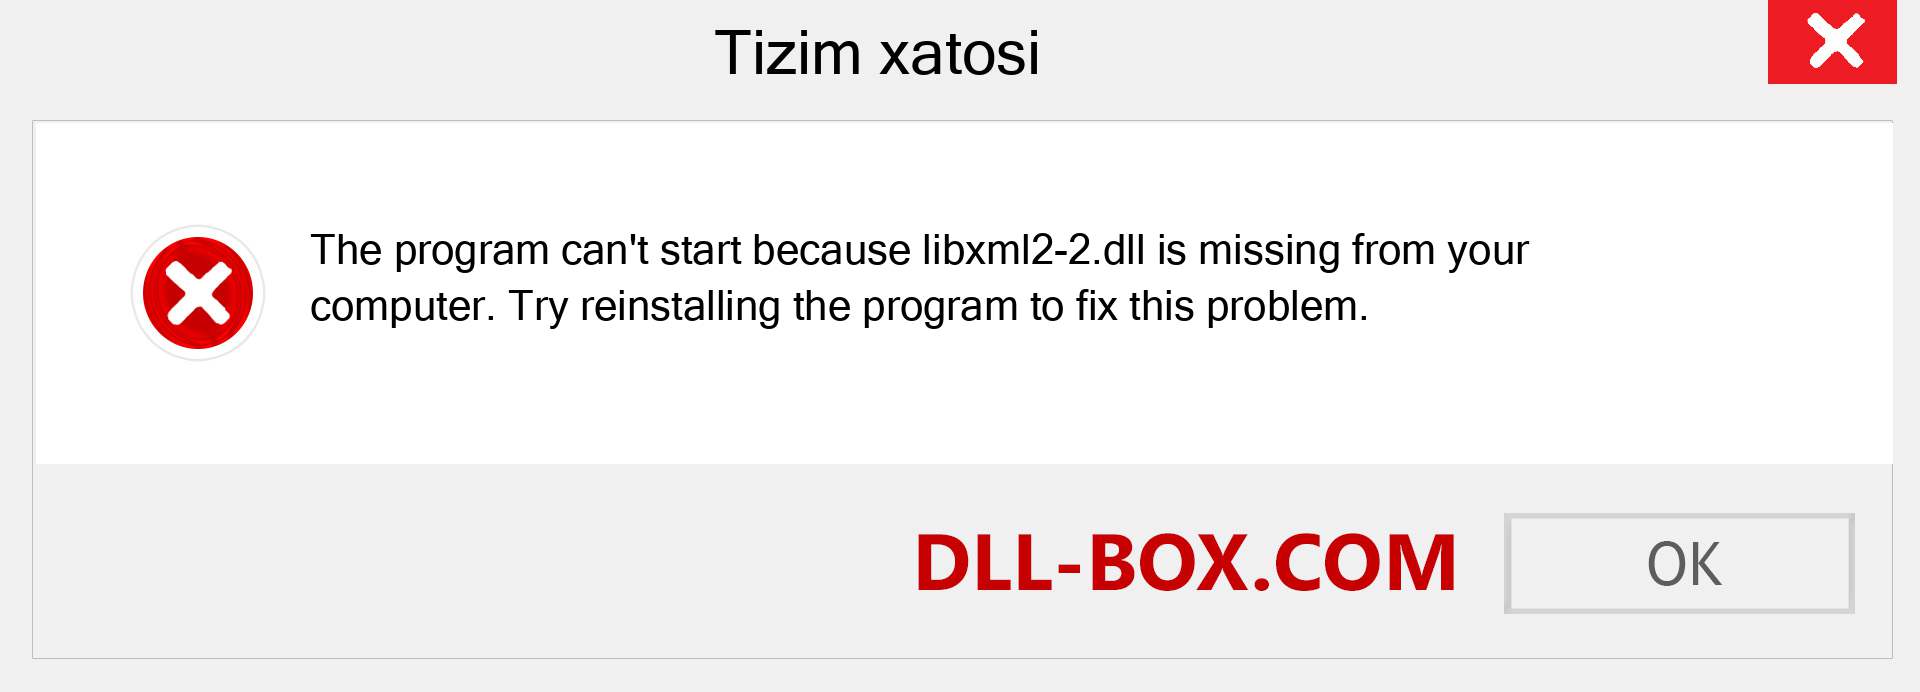 libxml2-2.dll fayli yo'qolganmi?. Windows 7, 8, 10 uchun yuklab olish - Windowsda libxml2-2 dll etishmayotgan xatoni tuzating, rasmlar, rasmlar